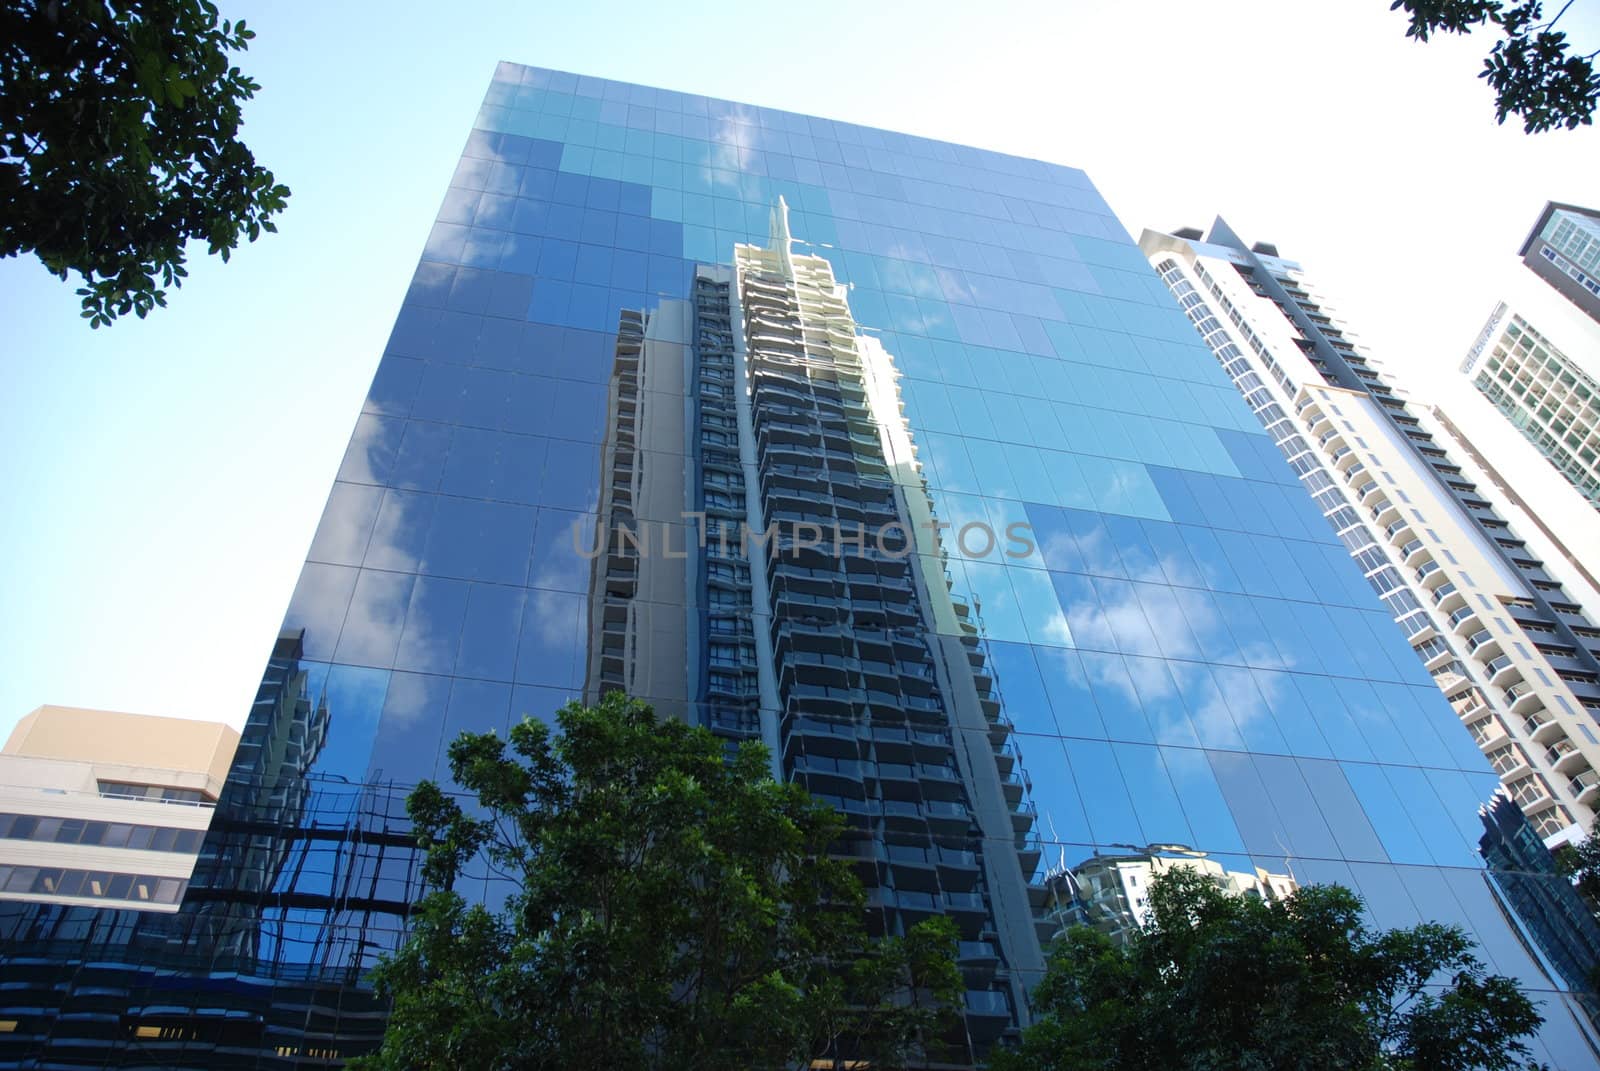 Reflection in the skyscraper (Brisbane CBD)